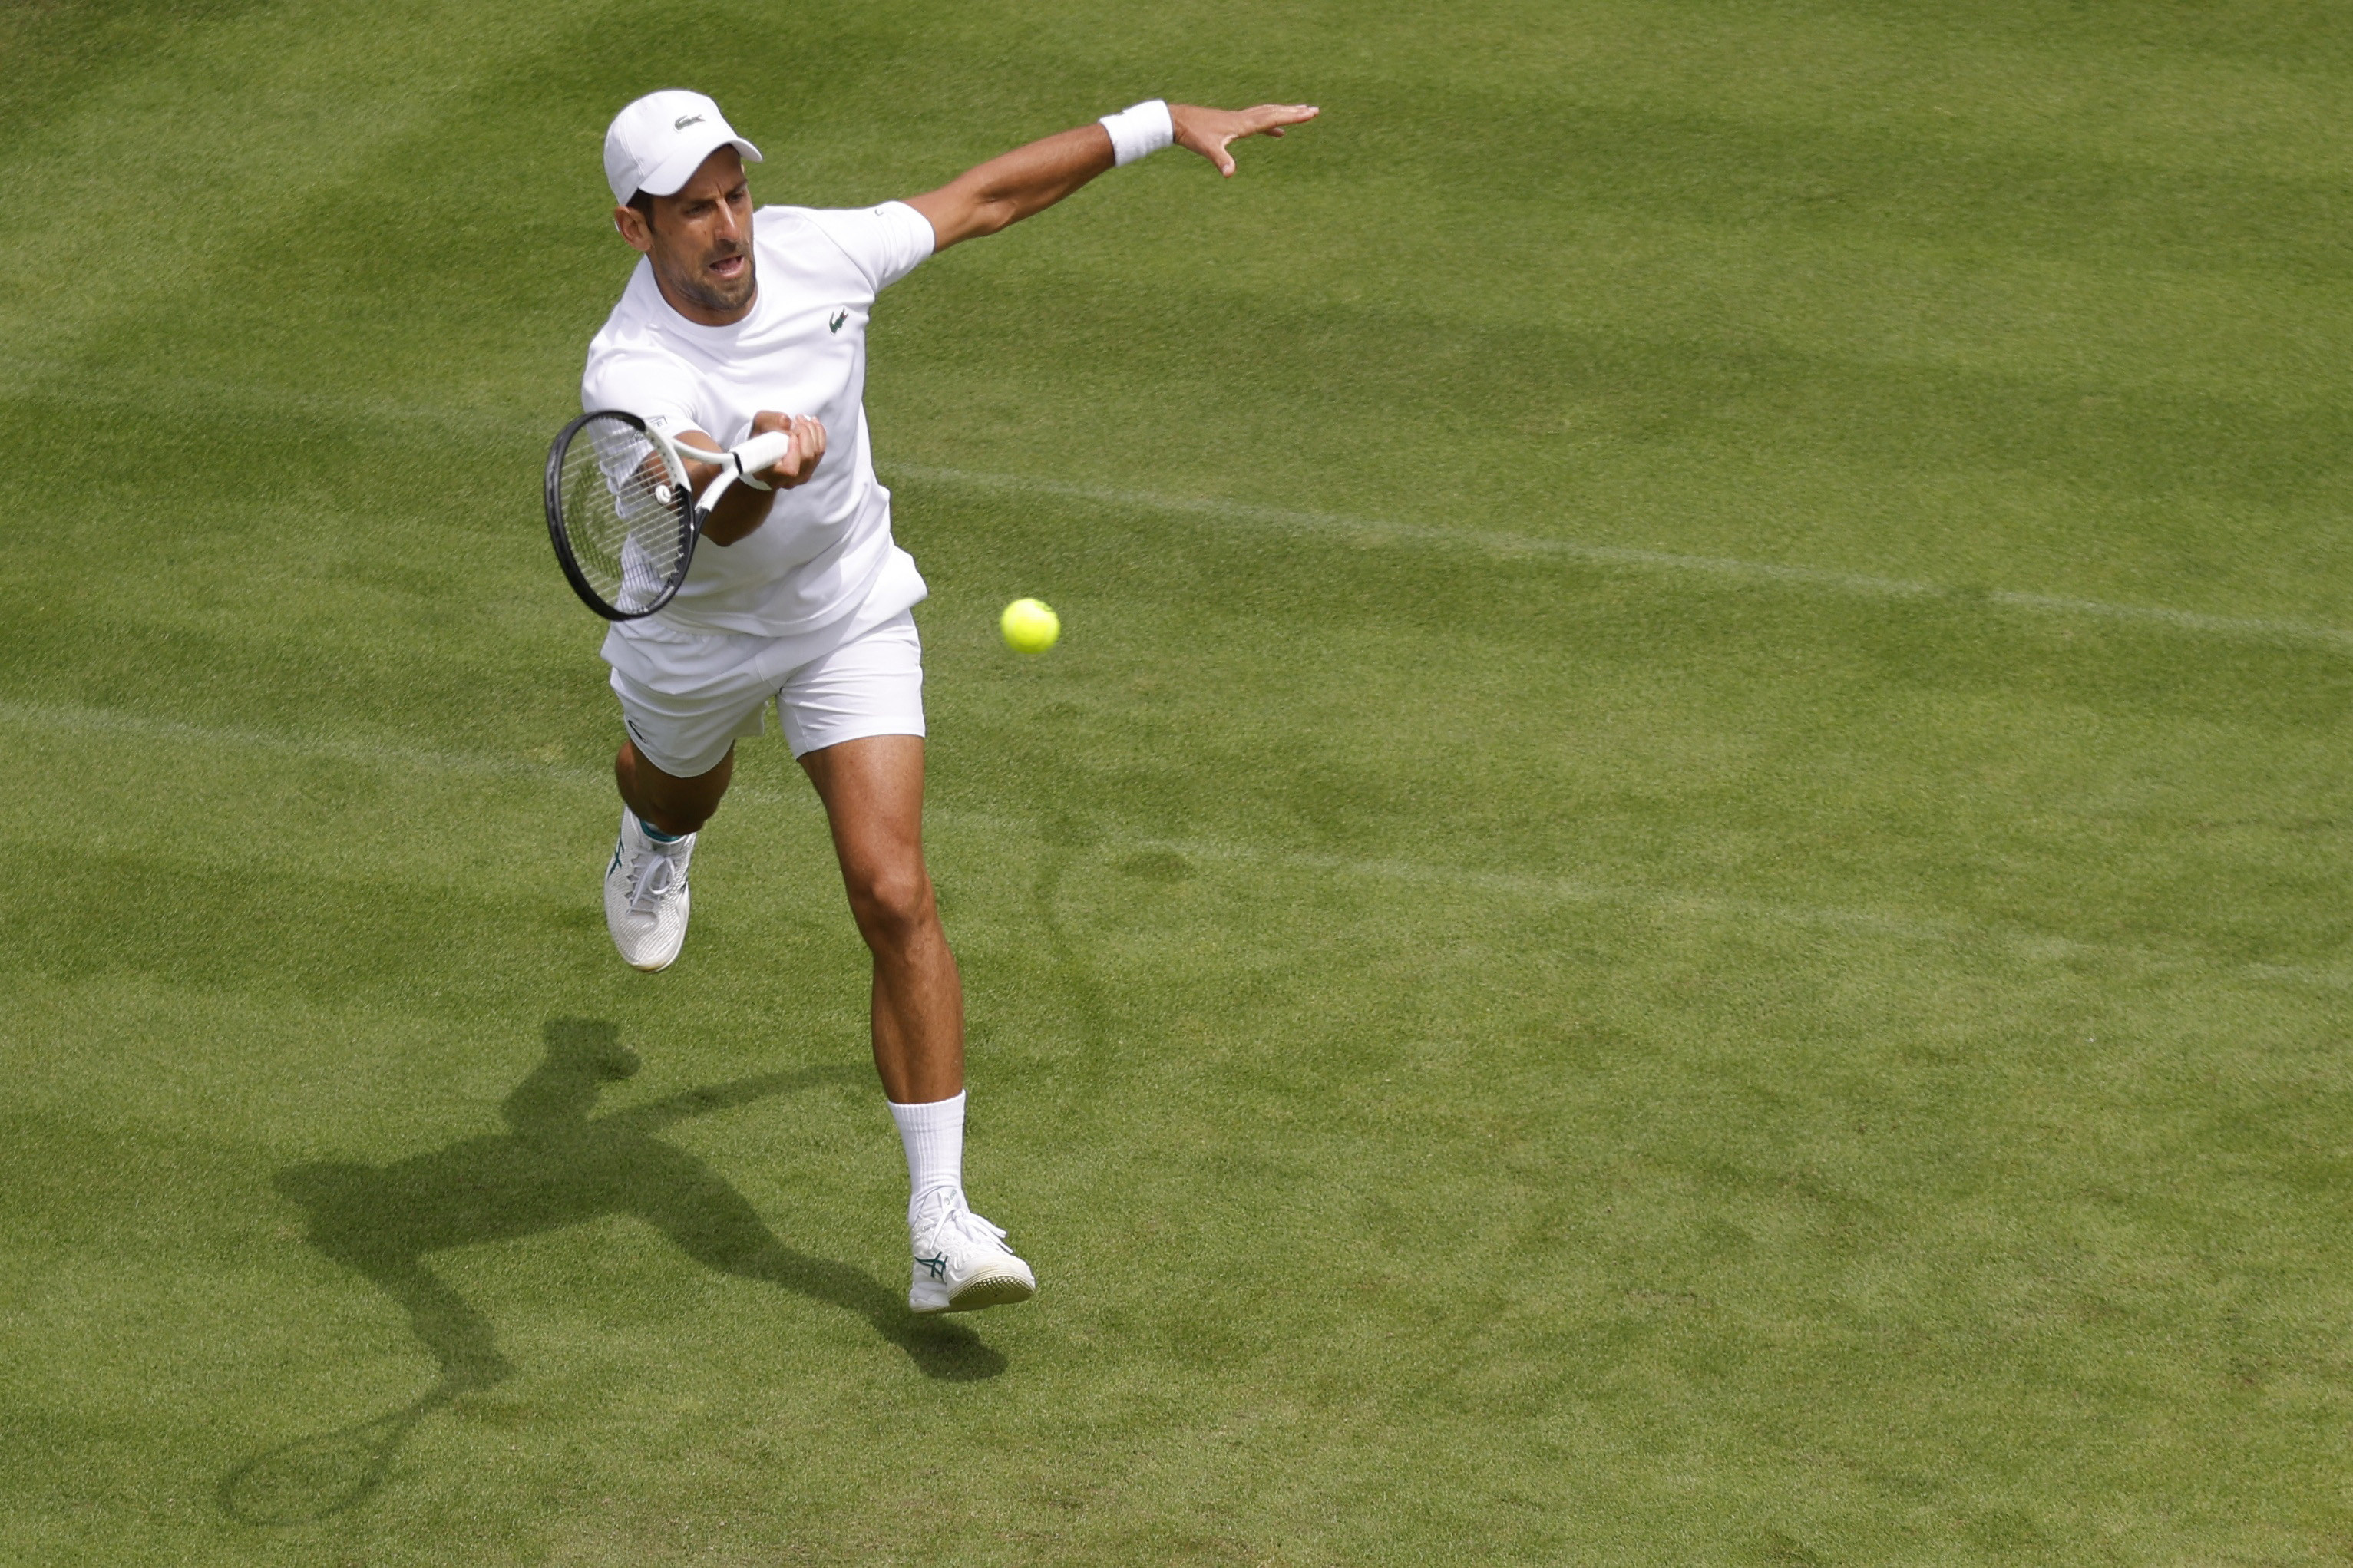 Djokovic is the 'greatest': Medvedev